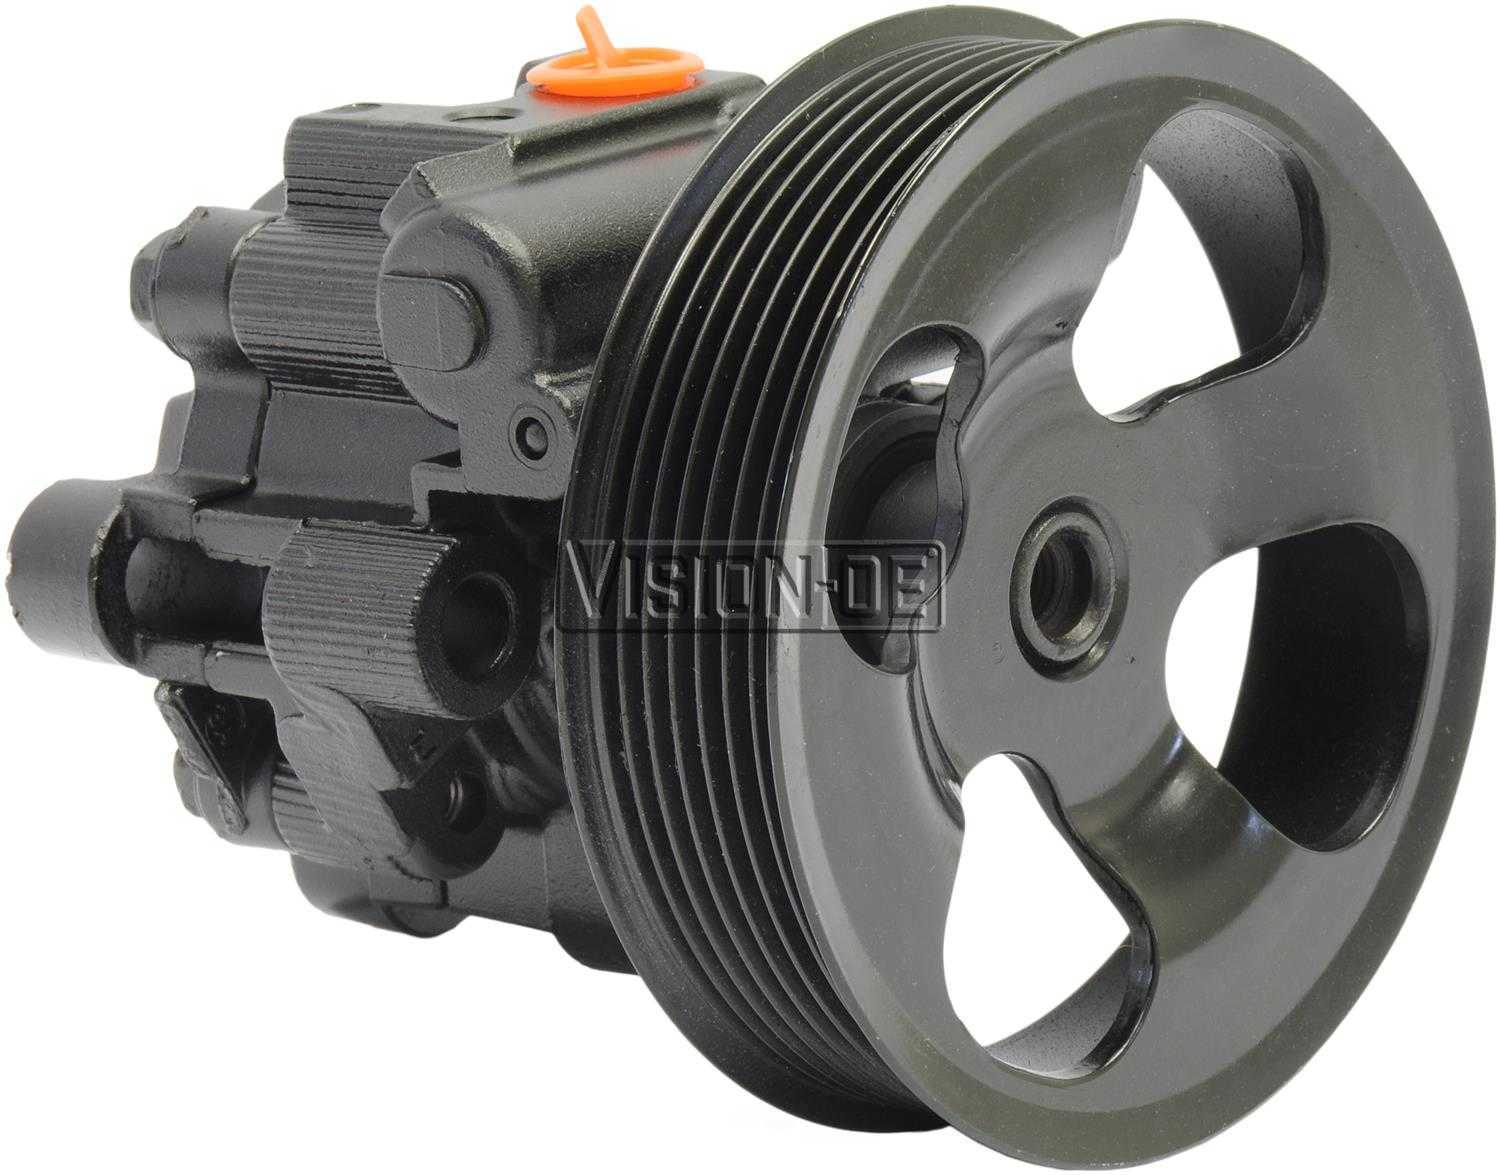 VISION-OE - Reman Power Steering Pump - VOE 990-1108